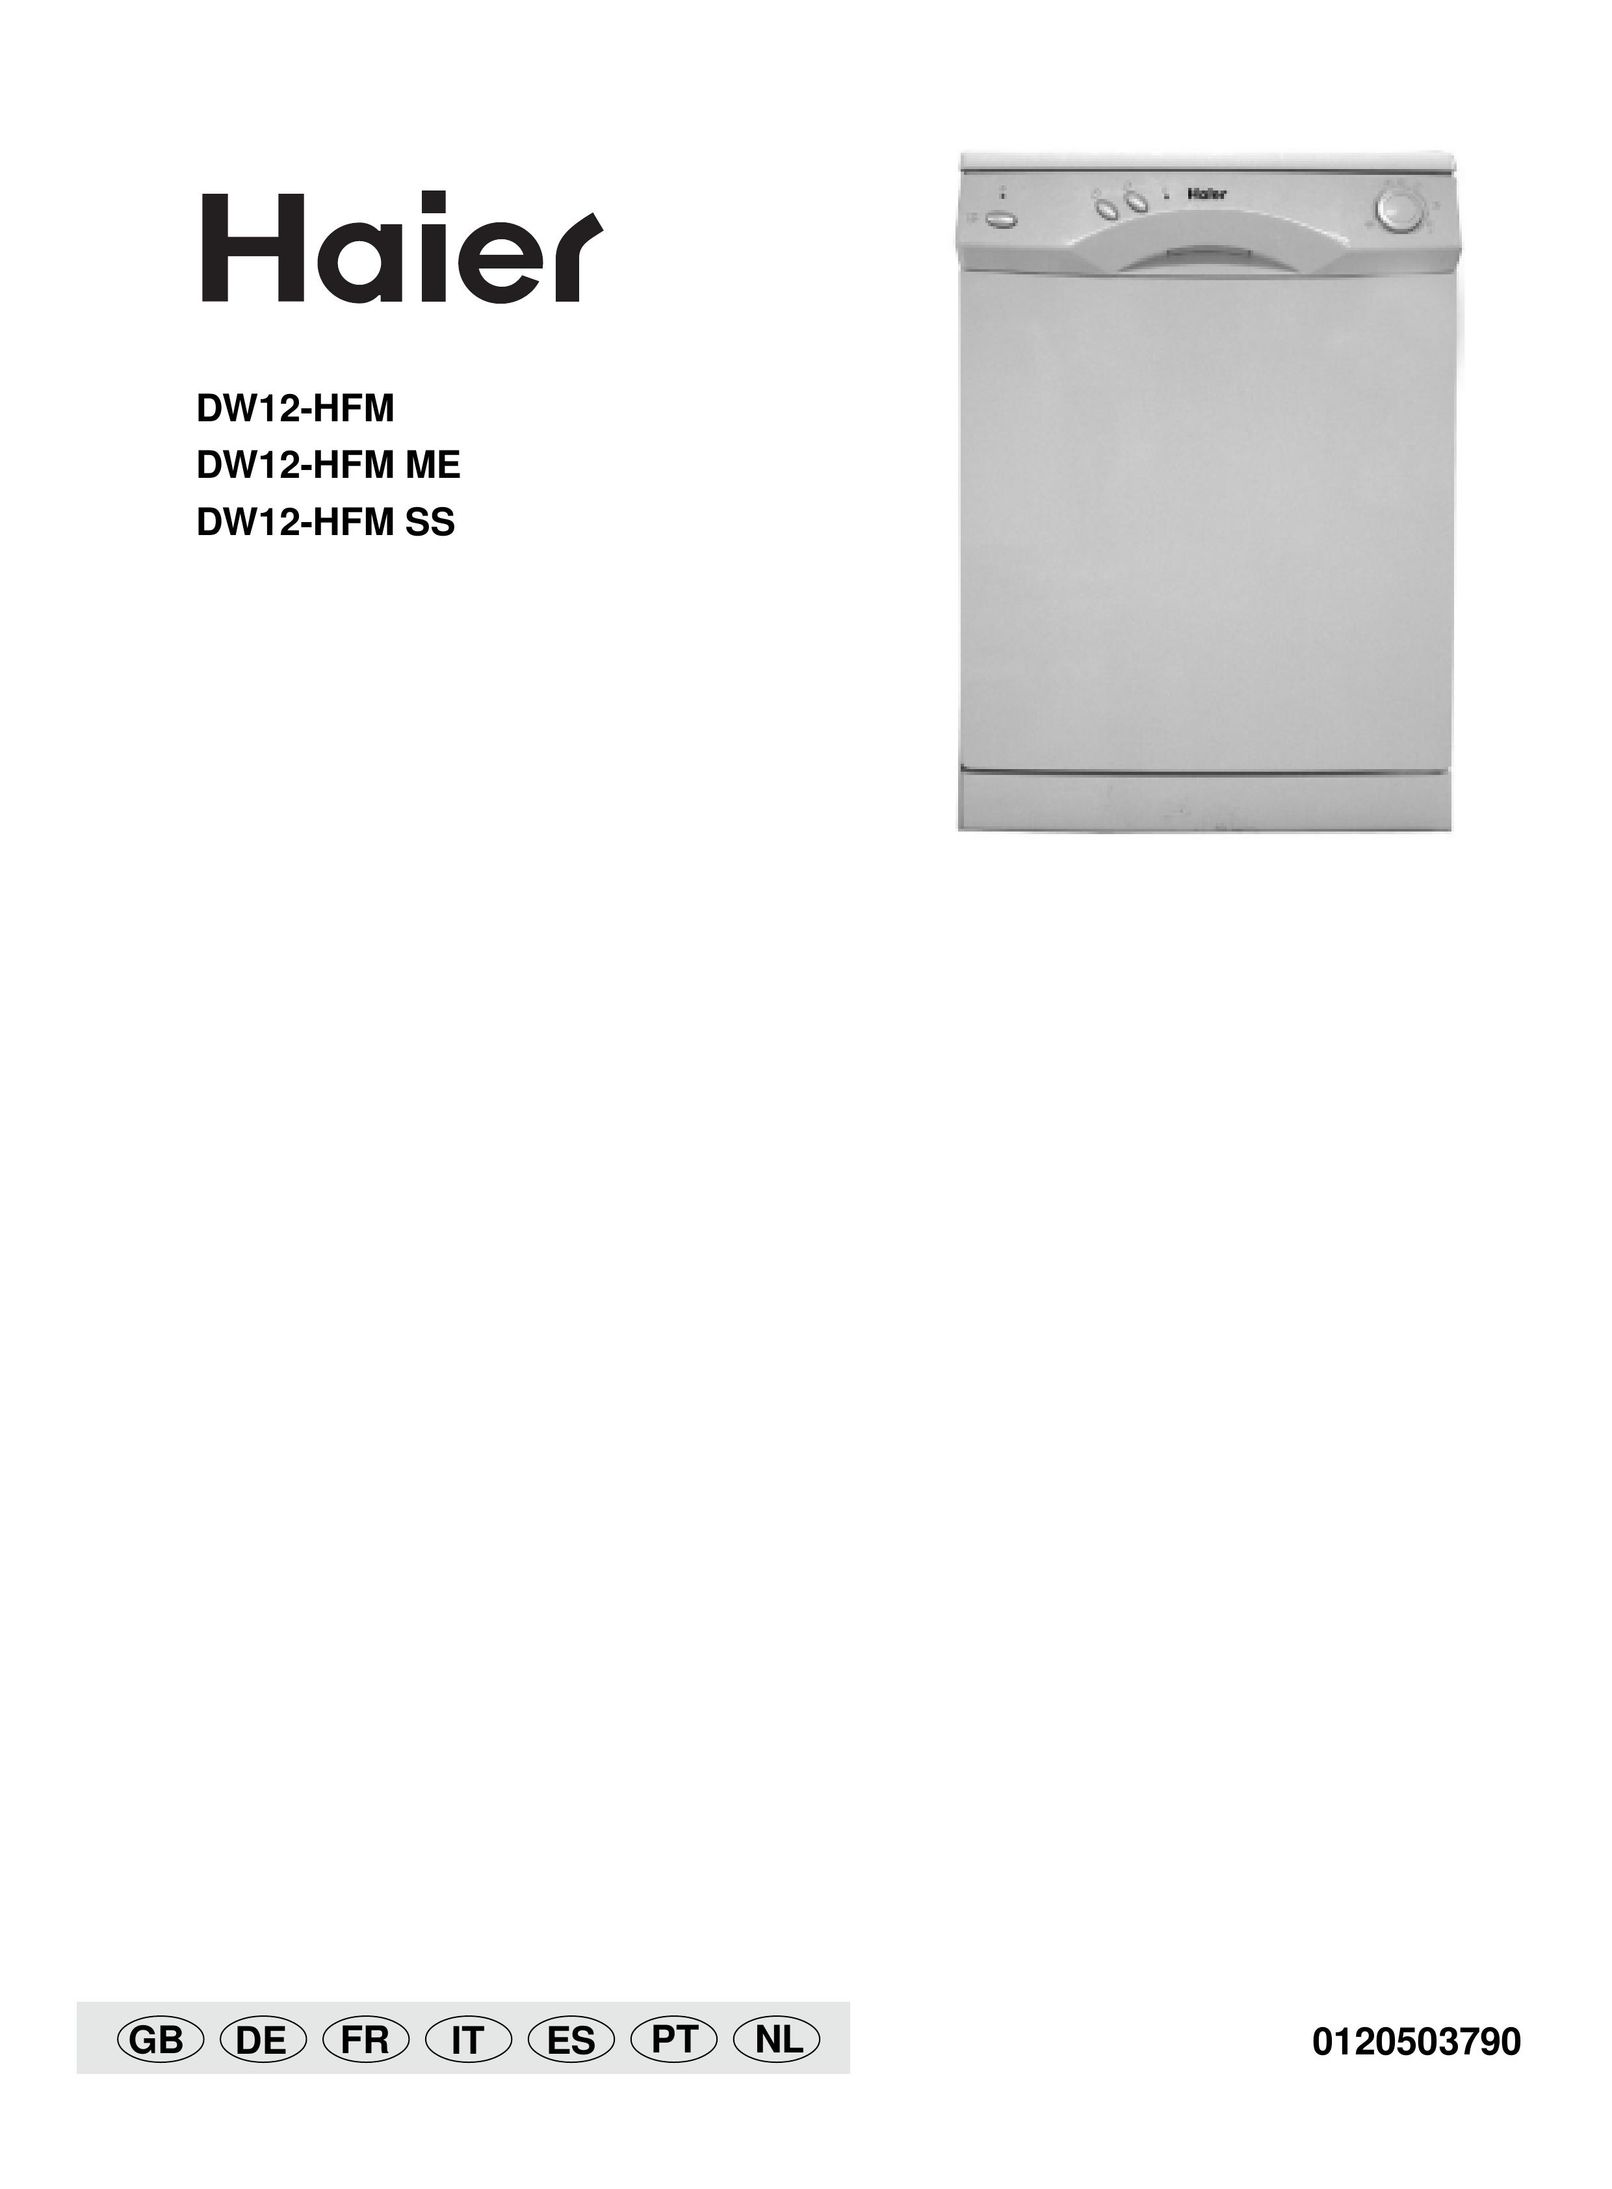 Haier DW12-HFM SS Dishwasher User Manual